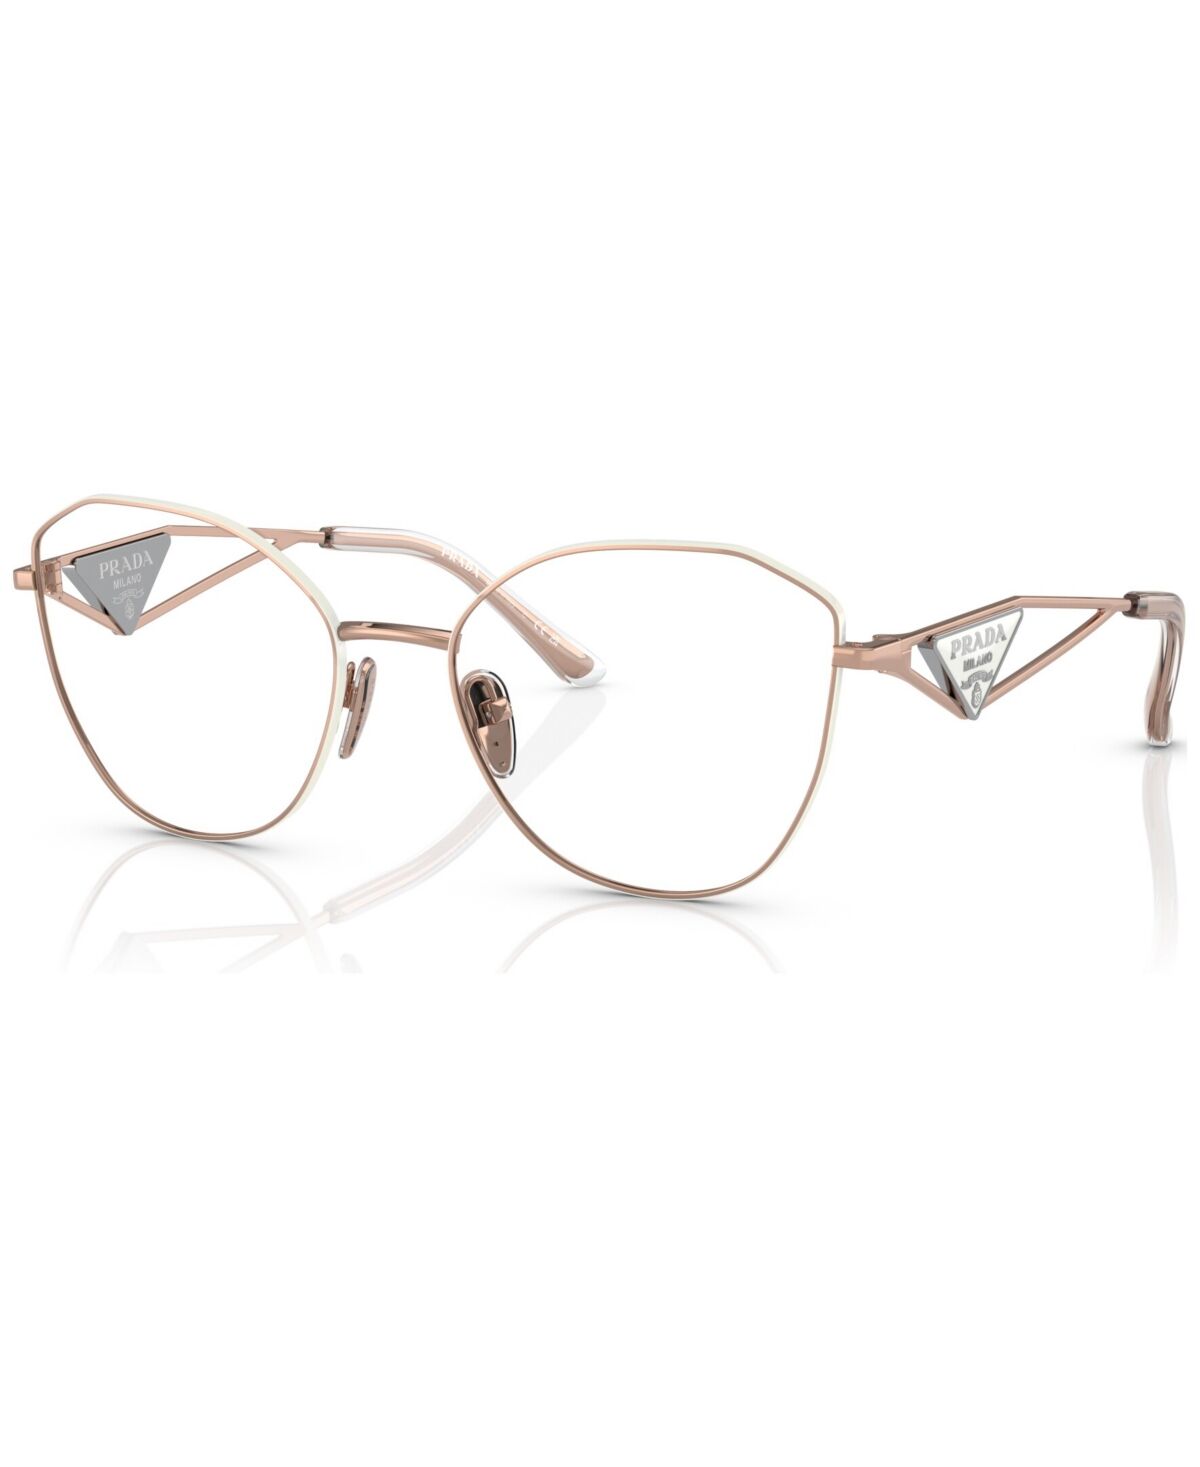 Prada Women's Irregular Eyeglasses, Pr 52ZV55-o - Pink Gold-Tone